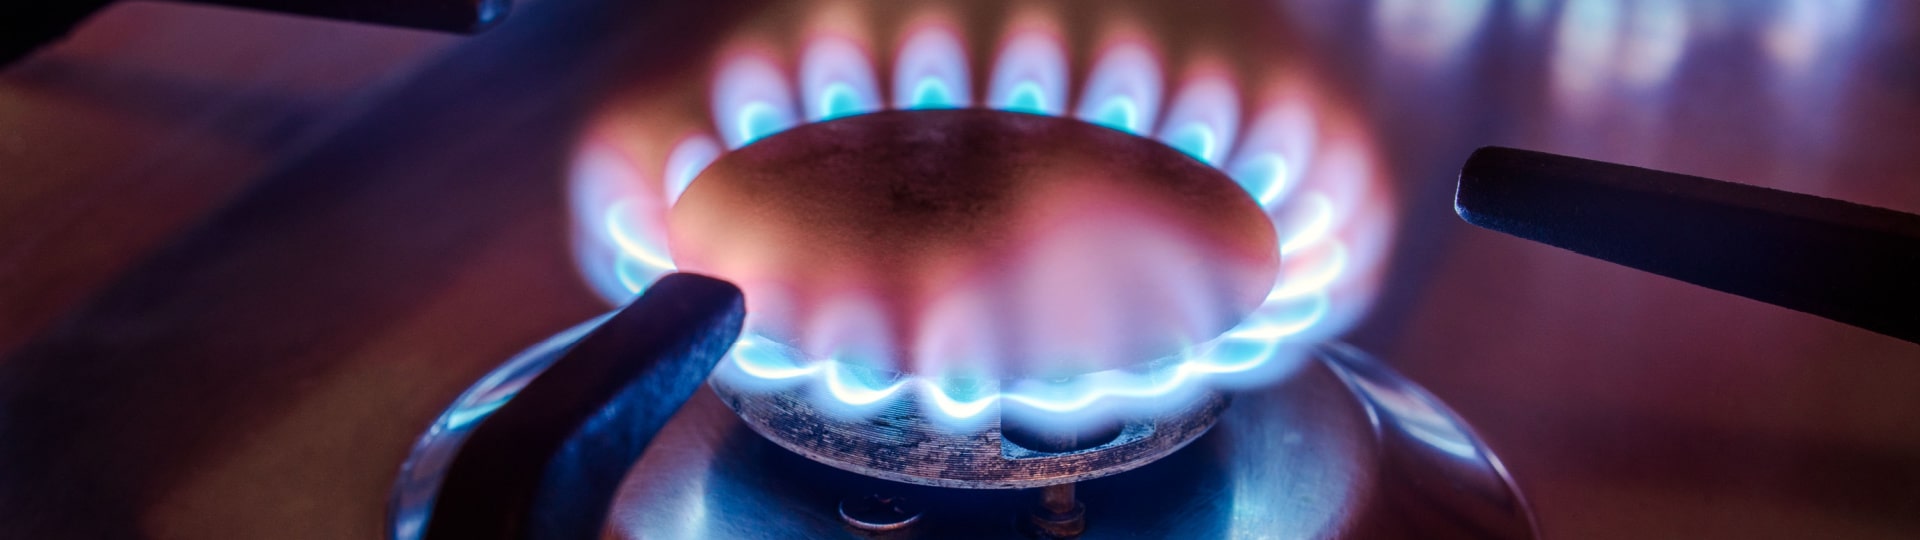 ČEZ nakoupí za 2,5 miliardy korun plynové kogenerační jednotky